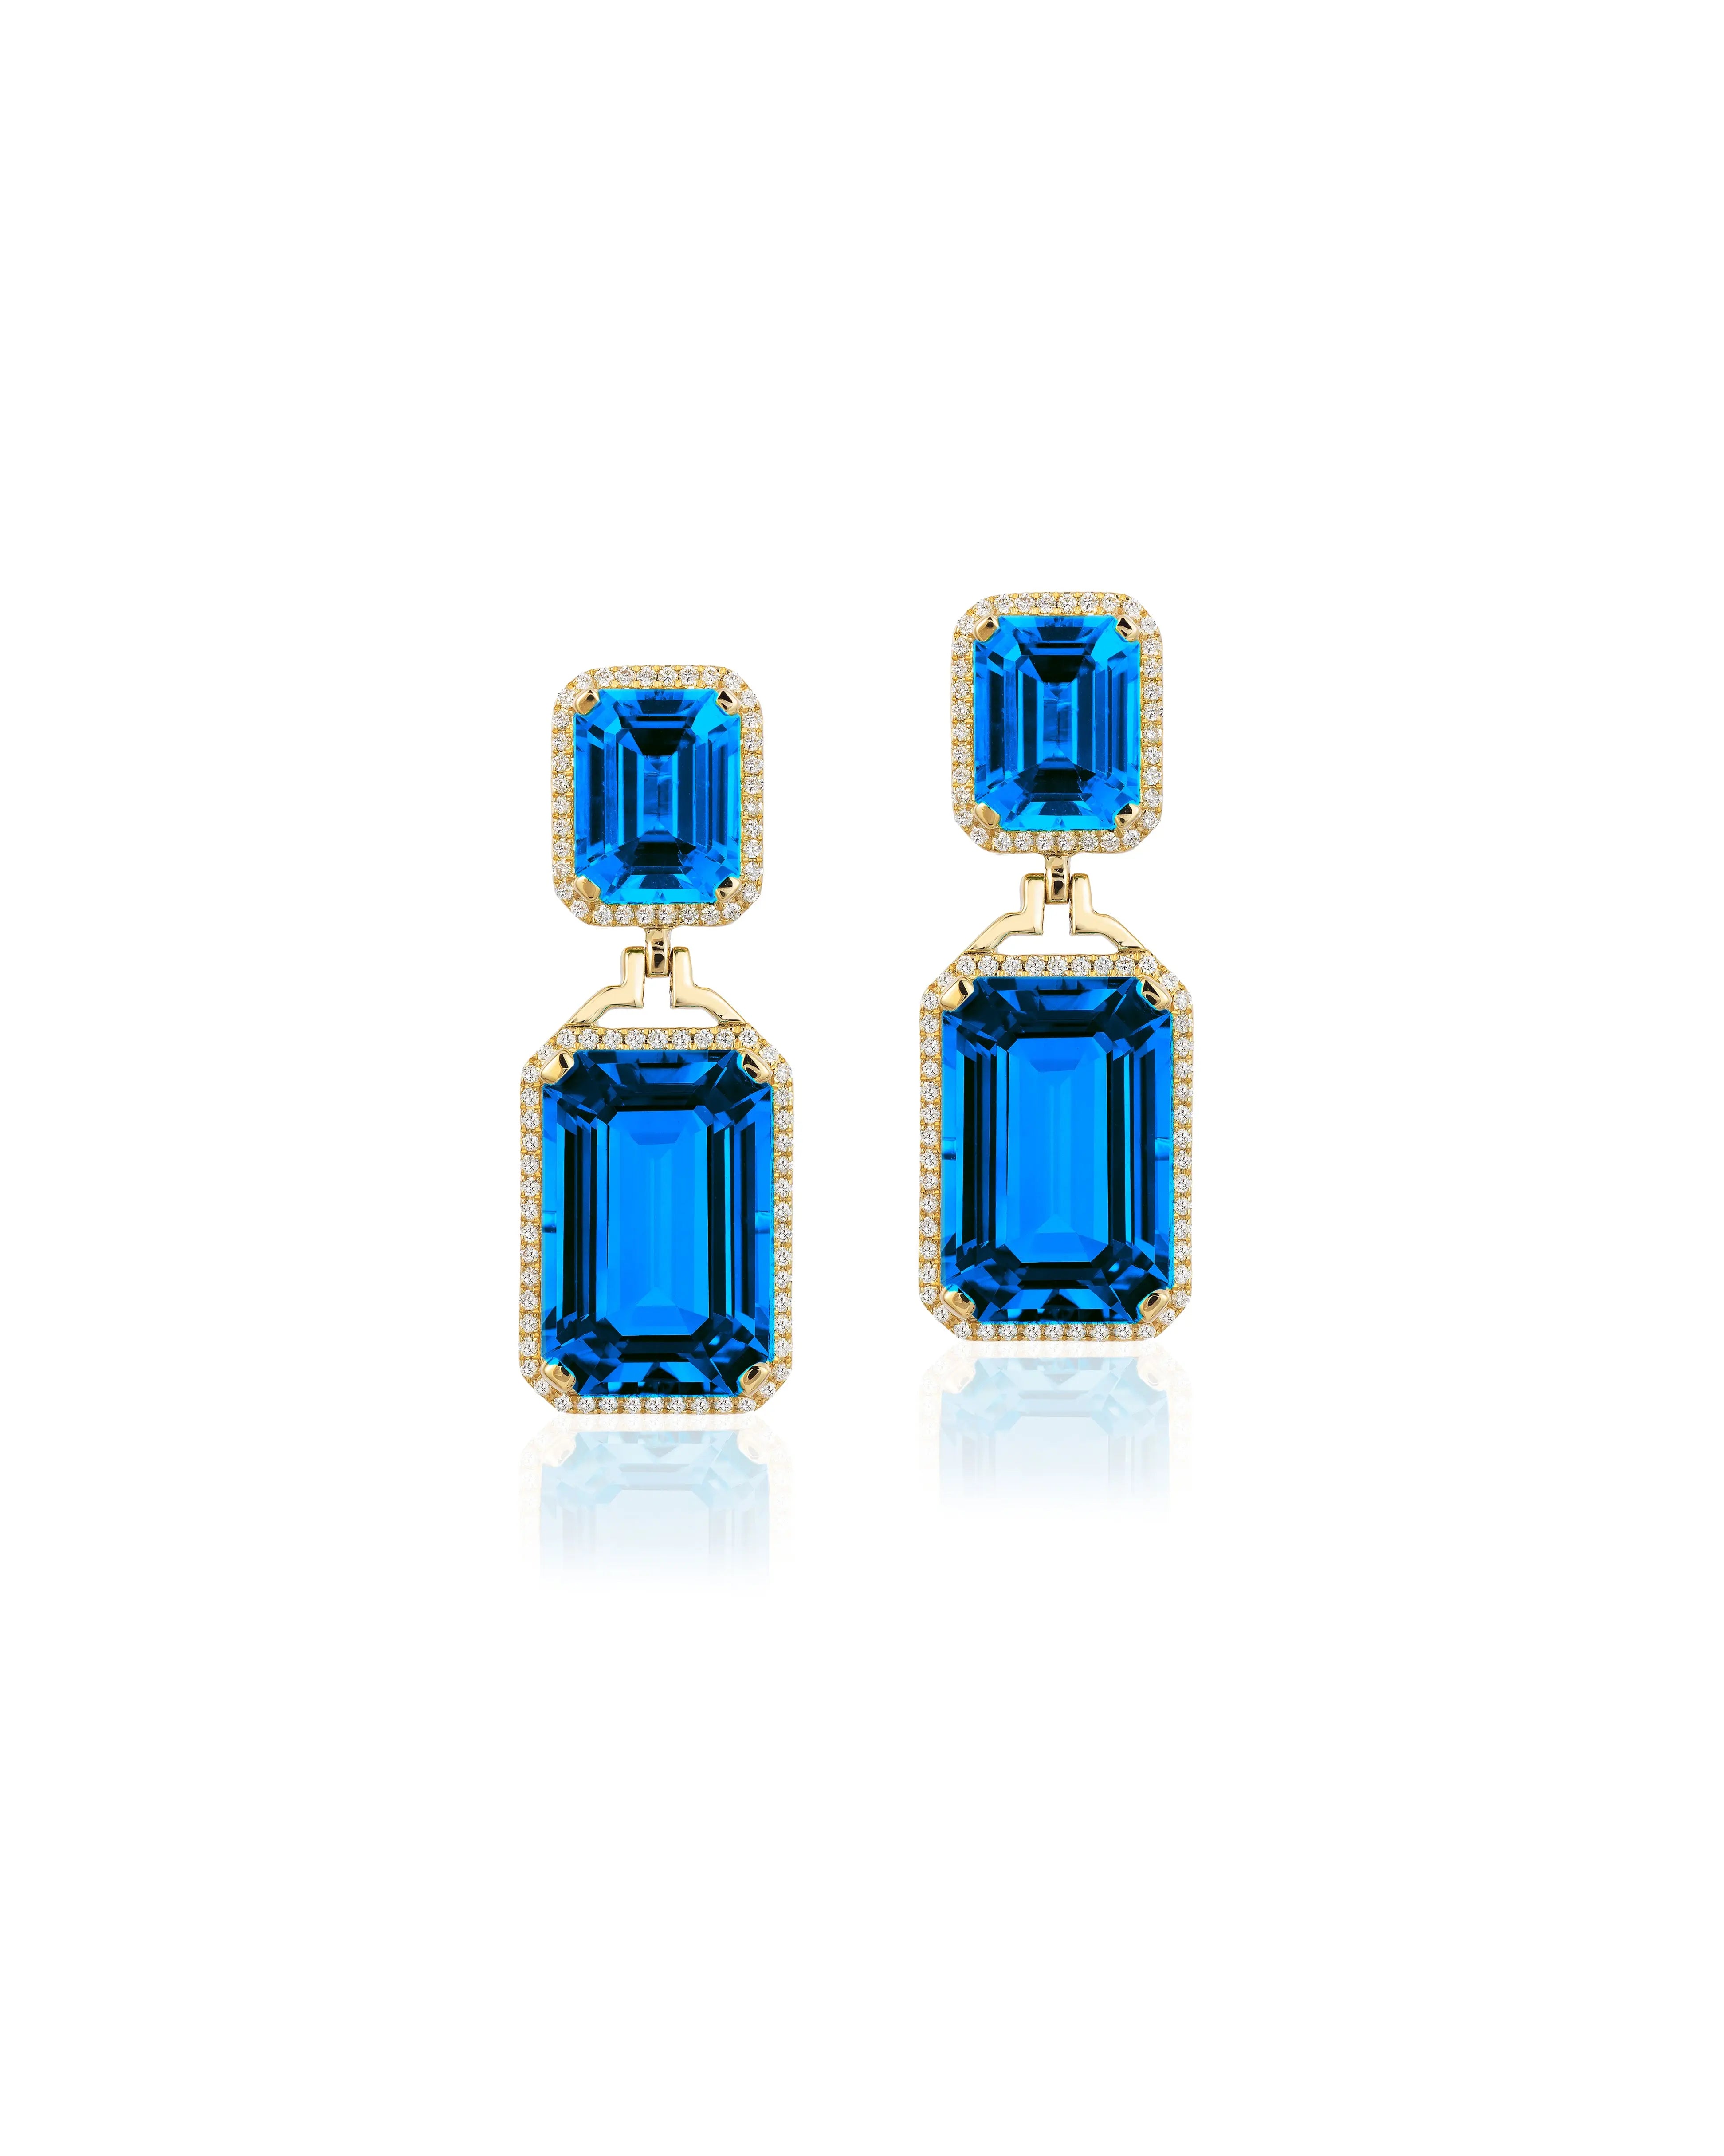 Gossip' London Blue Topaz Emerald Cut Diamond Earrings in 18K yellow gold. The stone size is ~ 10X15-9X7mm. The London Blue Topaz is 25.69 cttw with Diamonds ~ 0.41 cttw